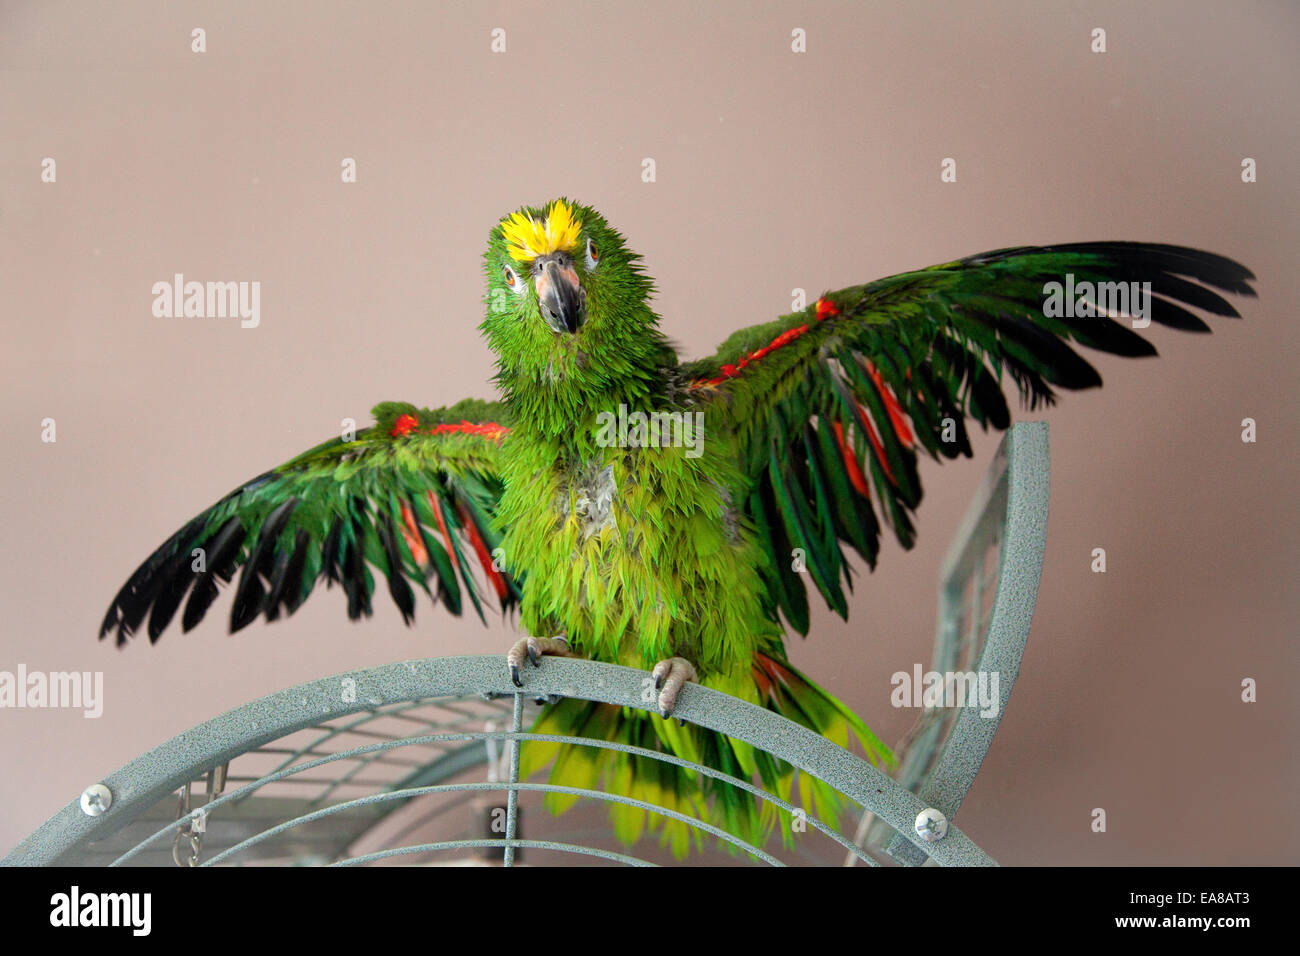 Gelbe gekrönte Amazon Papagei mit seinen Flügeln öffnen mit einer Dusche,  so dass er nass ist Stockfotografie - Alamy